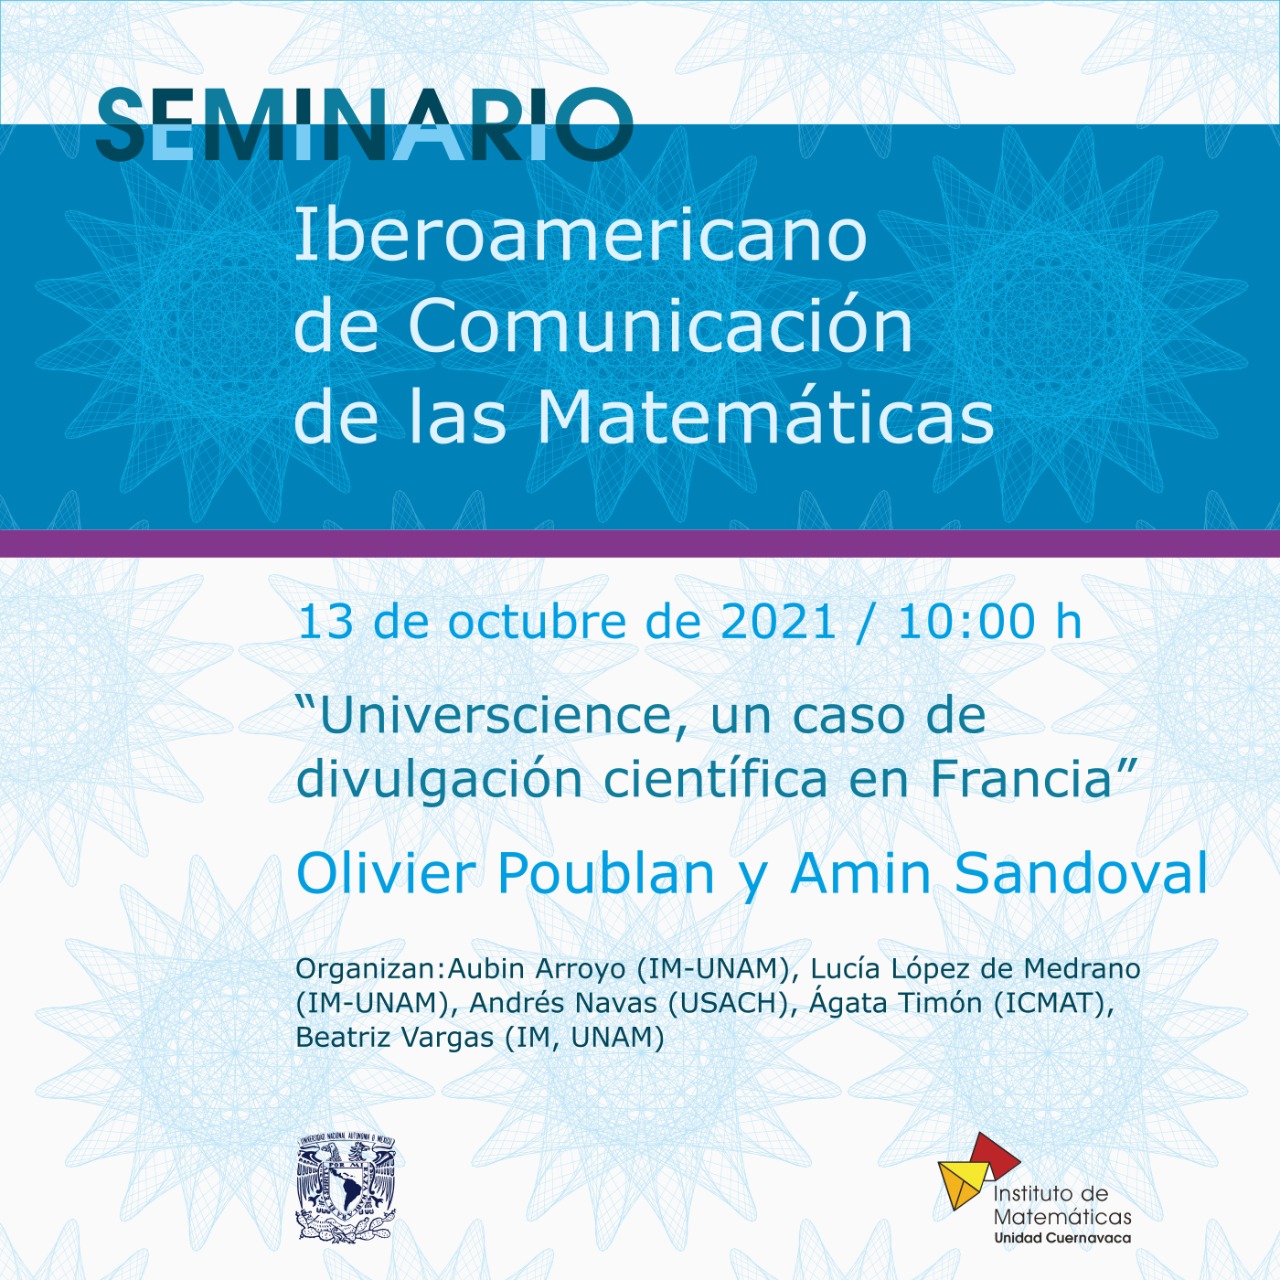 Seminario Iberoamericano de Comunicación de las Matemáticas / 13 de octubre de 2021